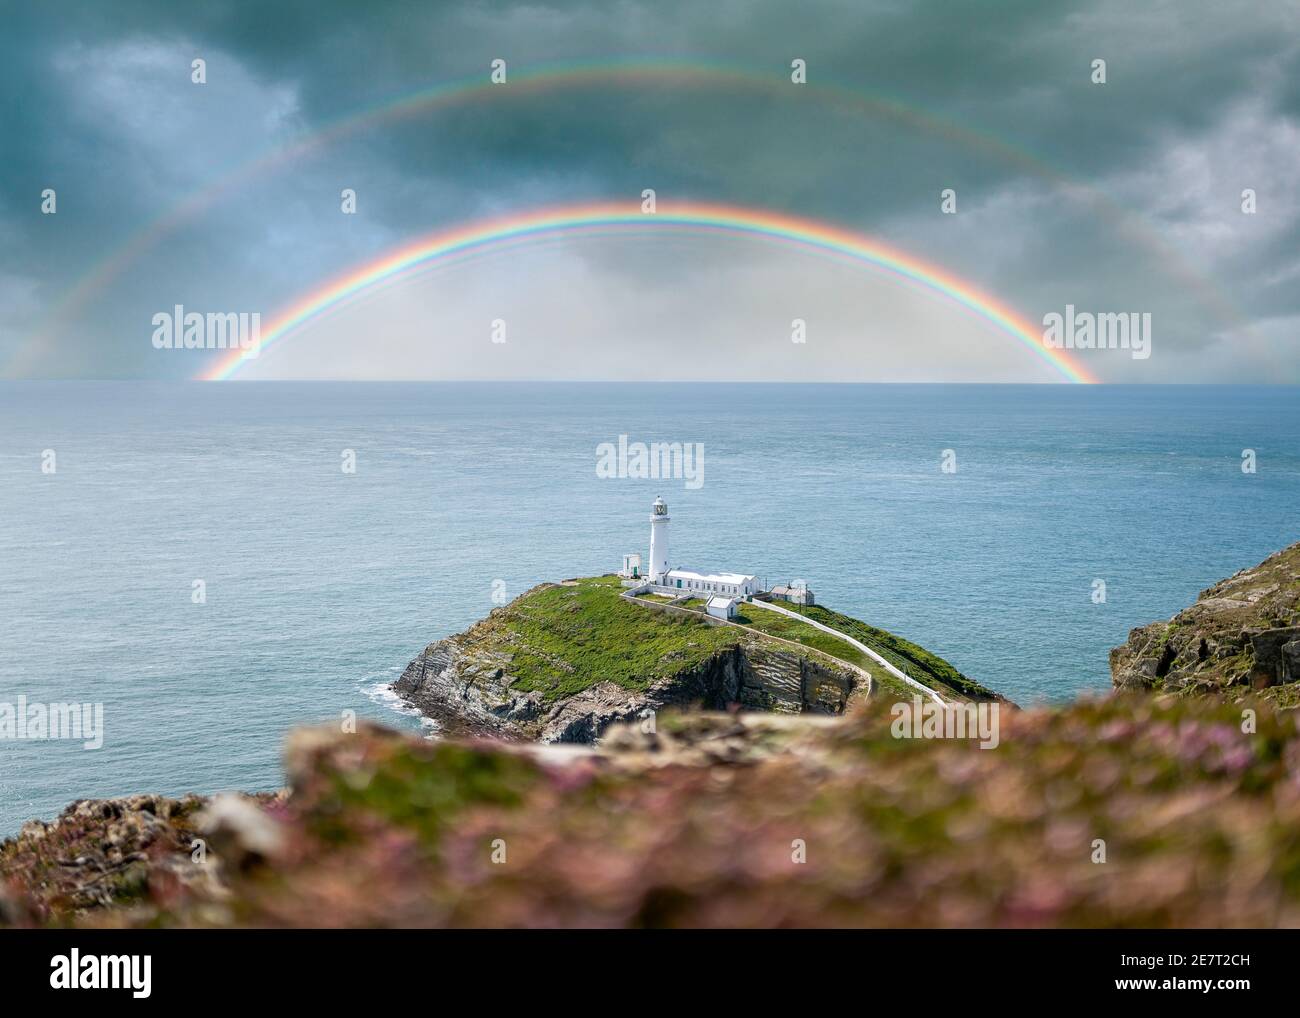 Colorati doppi arcobaleni in mare sopra l'orizzonte dell'oceano con tempesta nuvole cielo drammatico e bianco faro in cima a sud stack isola costa Foto Stock